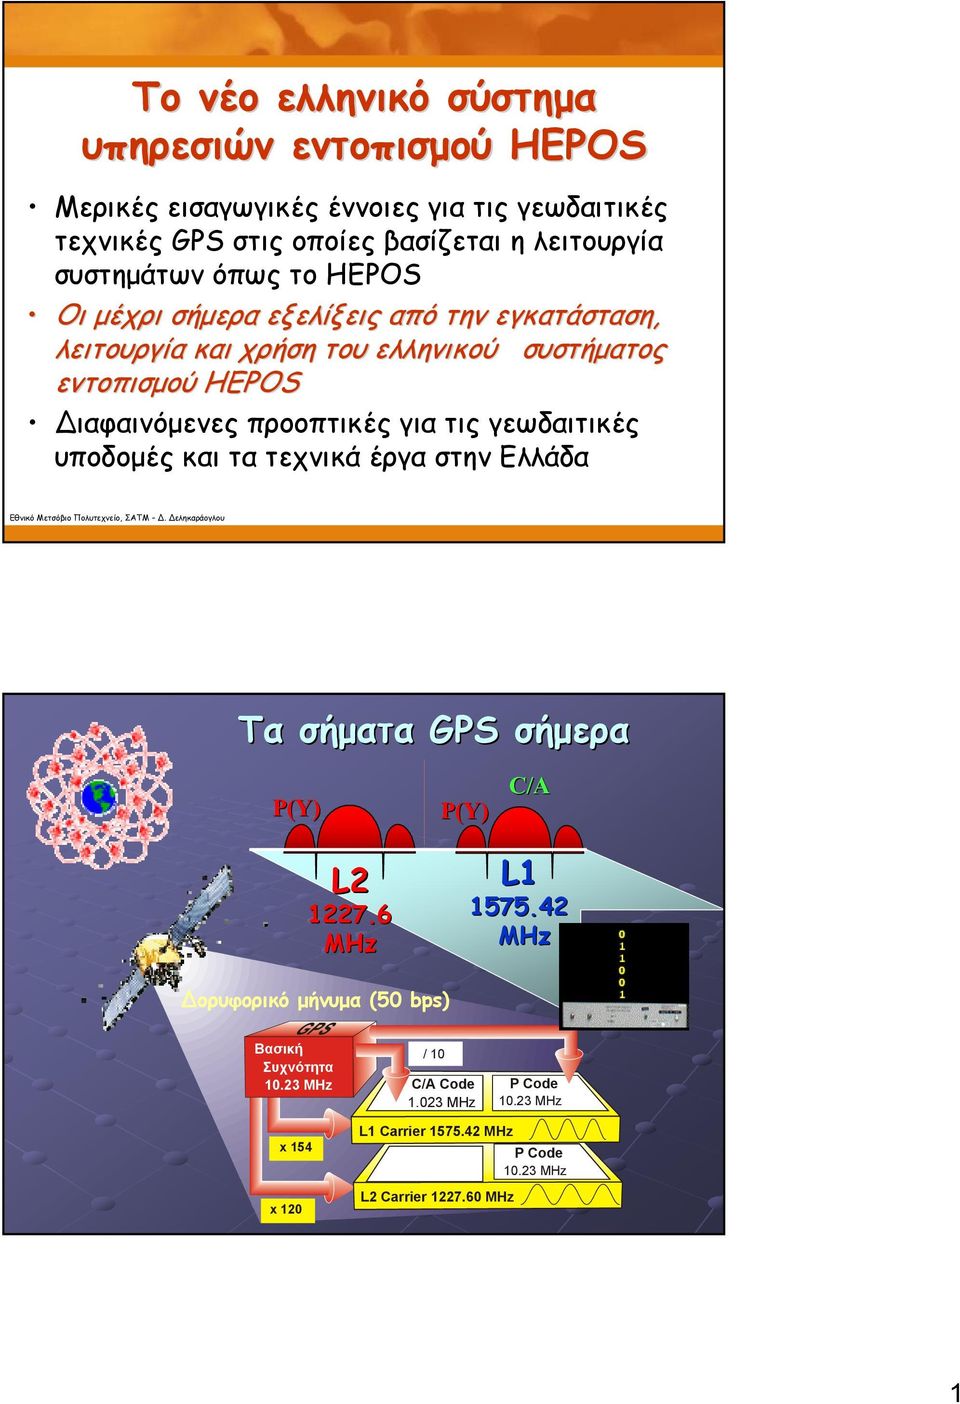 προοπτικές για τις γεωδαιτικές υποδομές και τα τεχνικά έργα στην Ελλάδα Τα σήματα GPS σήμερα P(Y) P(Y) C/A L2 1227.6 MHz L1 1575.